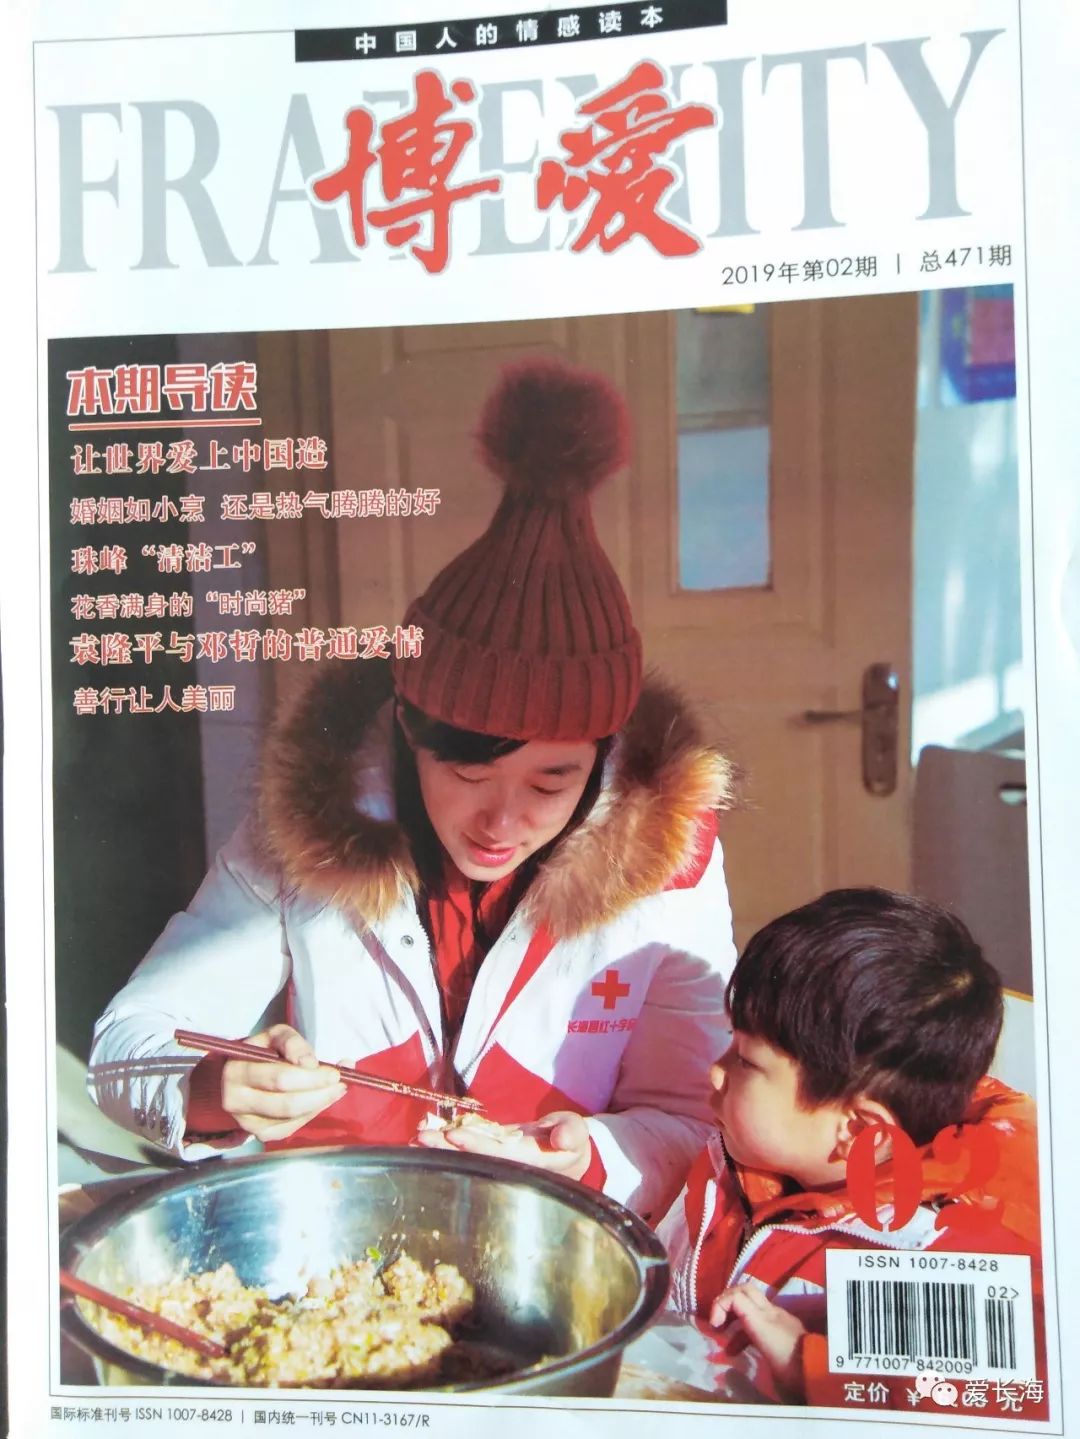 志愿者风采:我县红十字志愿者第三次登上《博爱》杂志封面